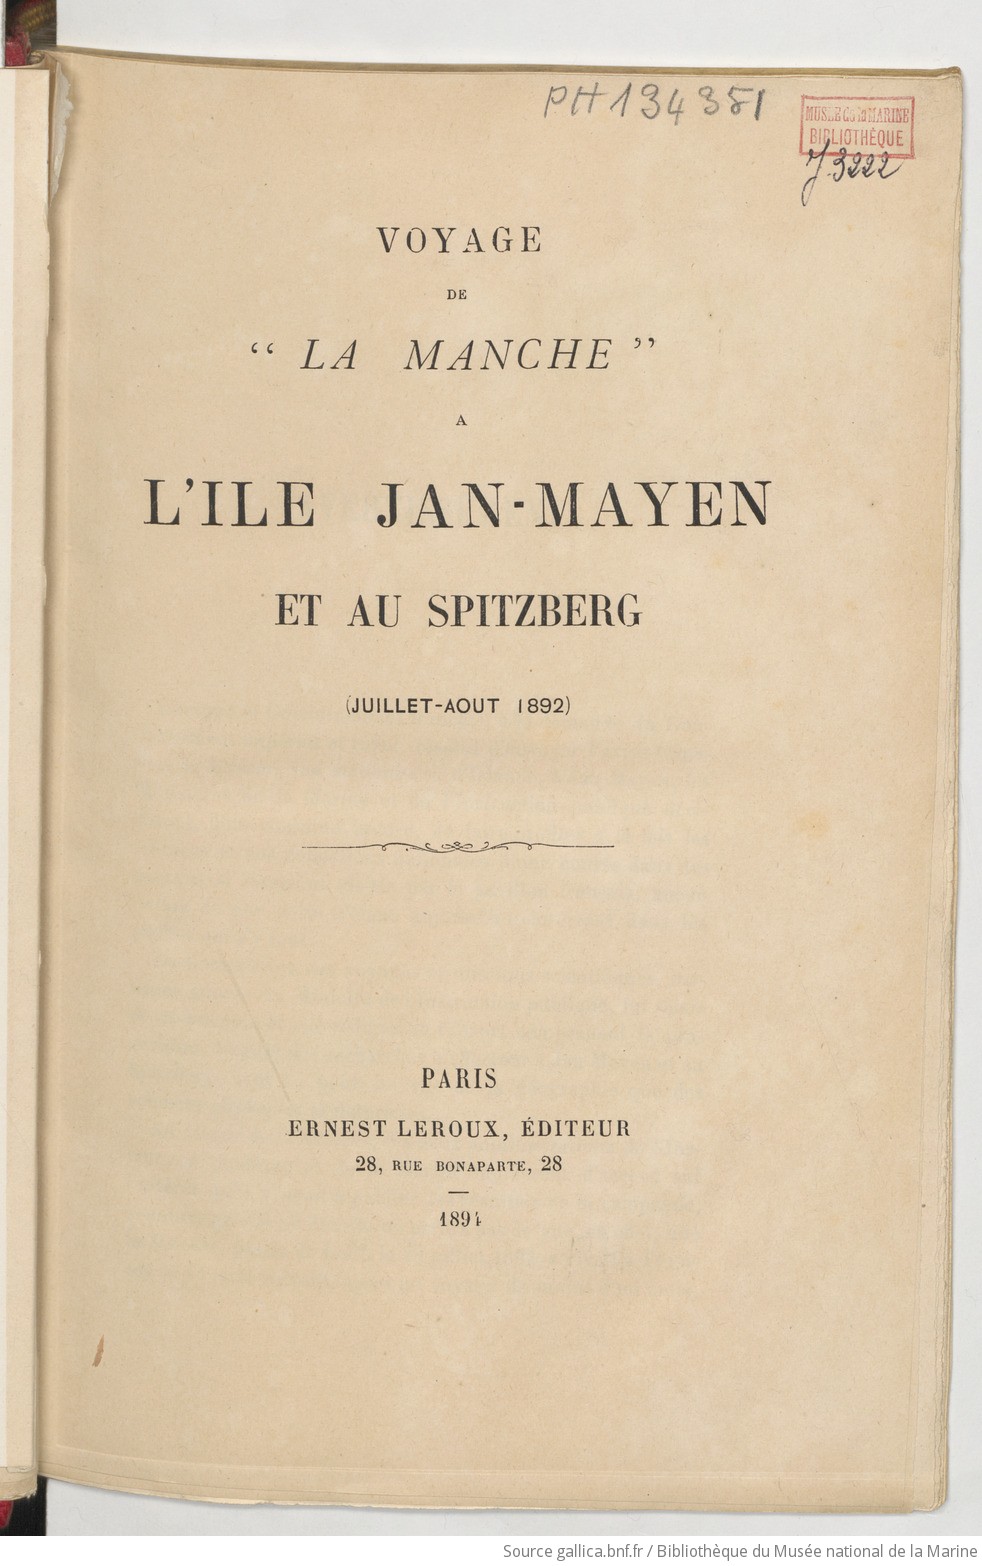 Voyage de la Manche à l'île Jan-Mayen et au Spitzberg (juillet-août 1892)